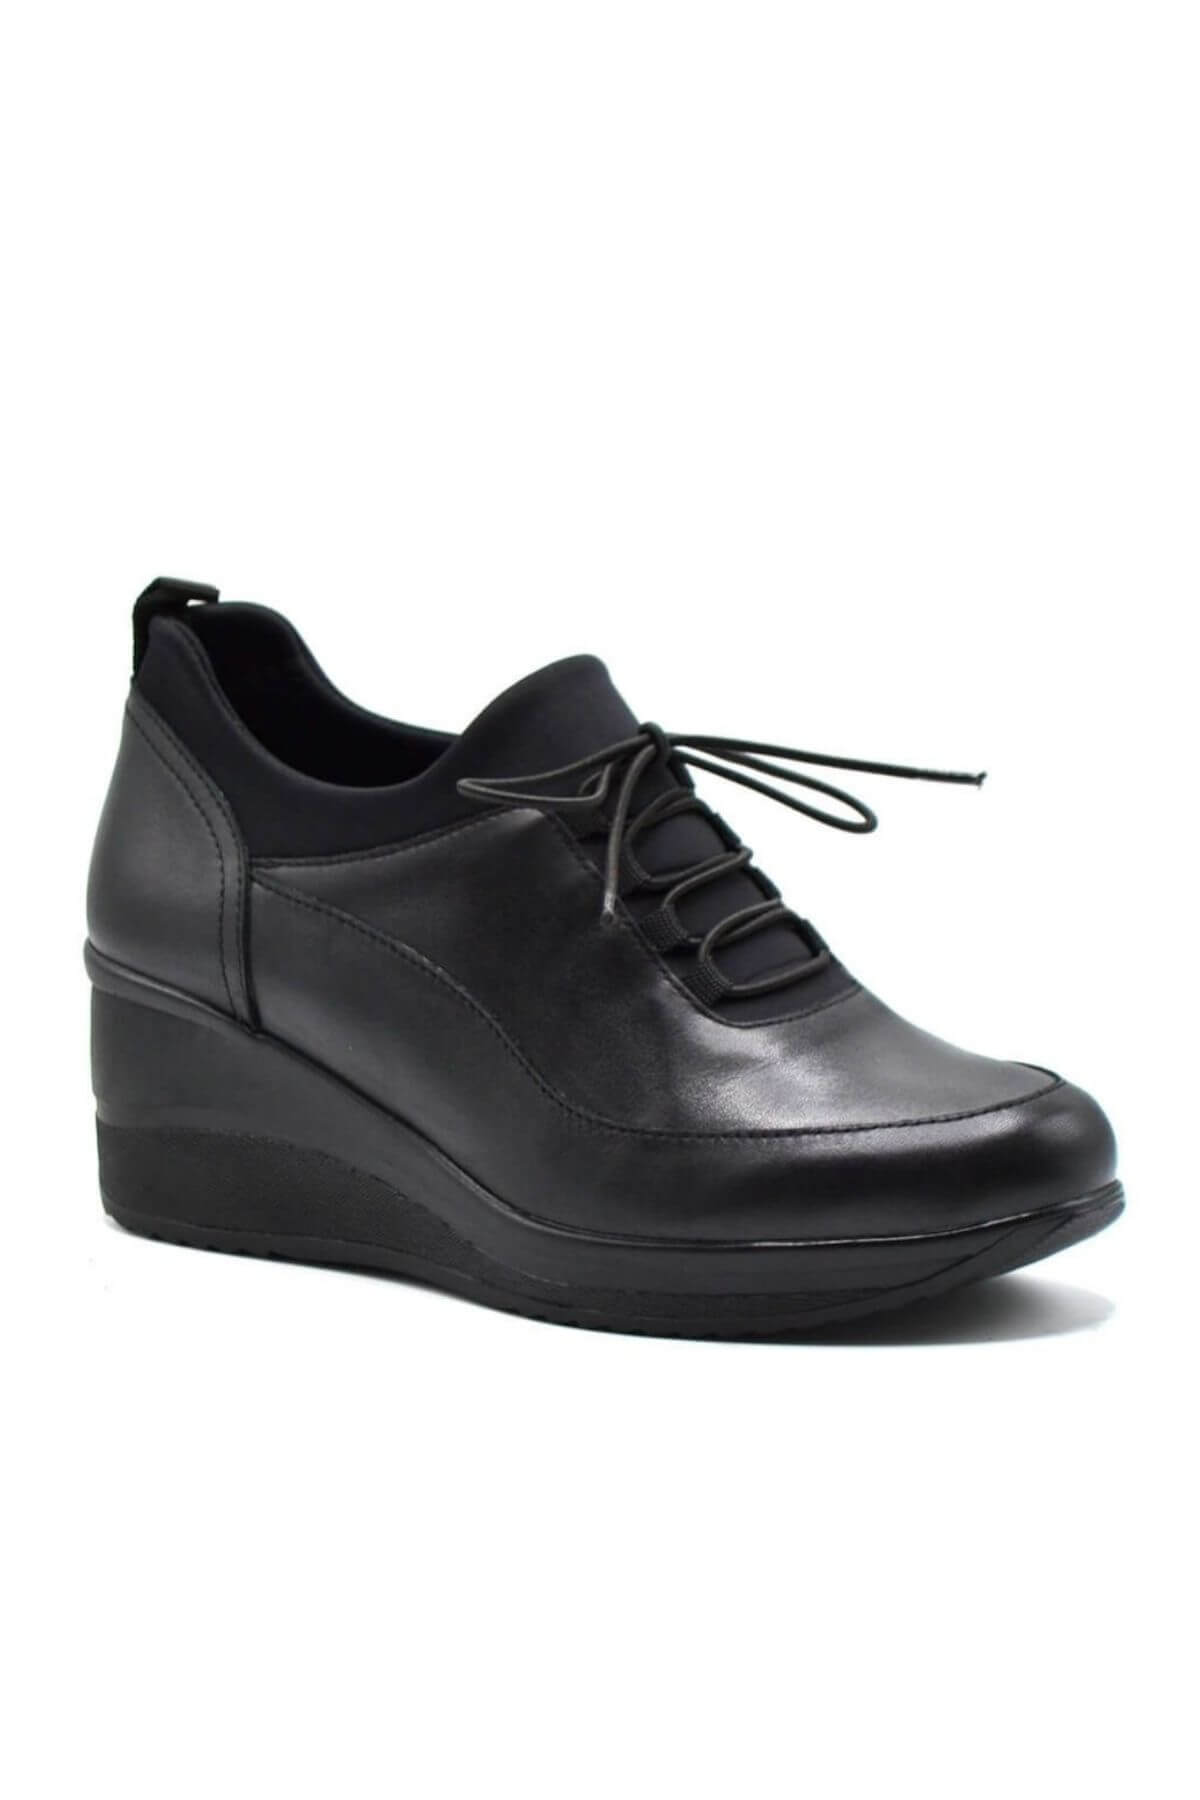 Kadın Dolgu Topuk Düz Deri Ayakkabı Siyah 2111510K - Thumbnail